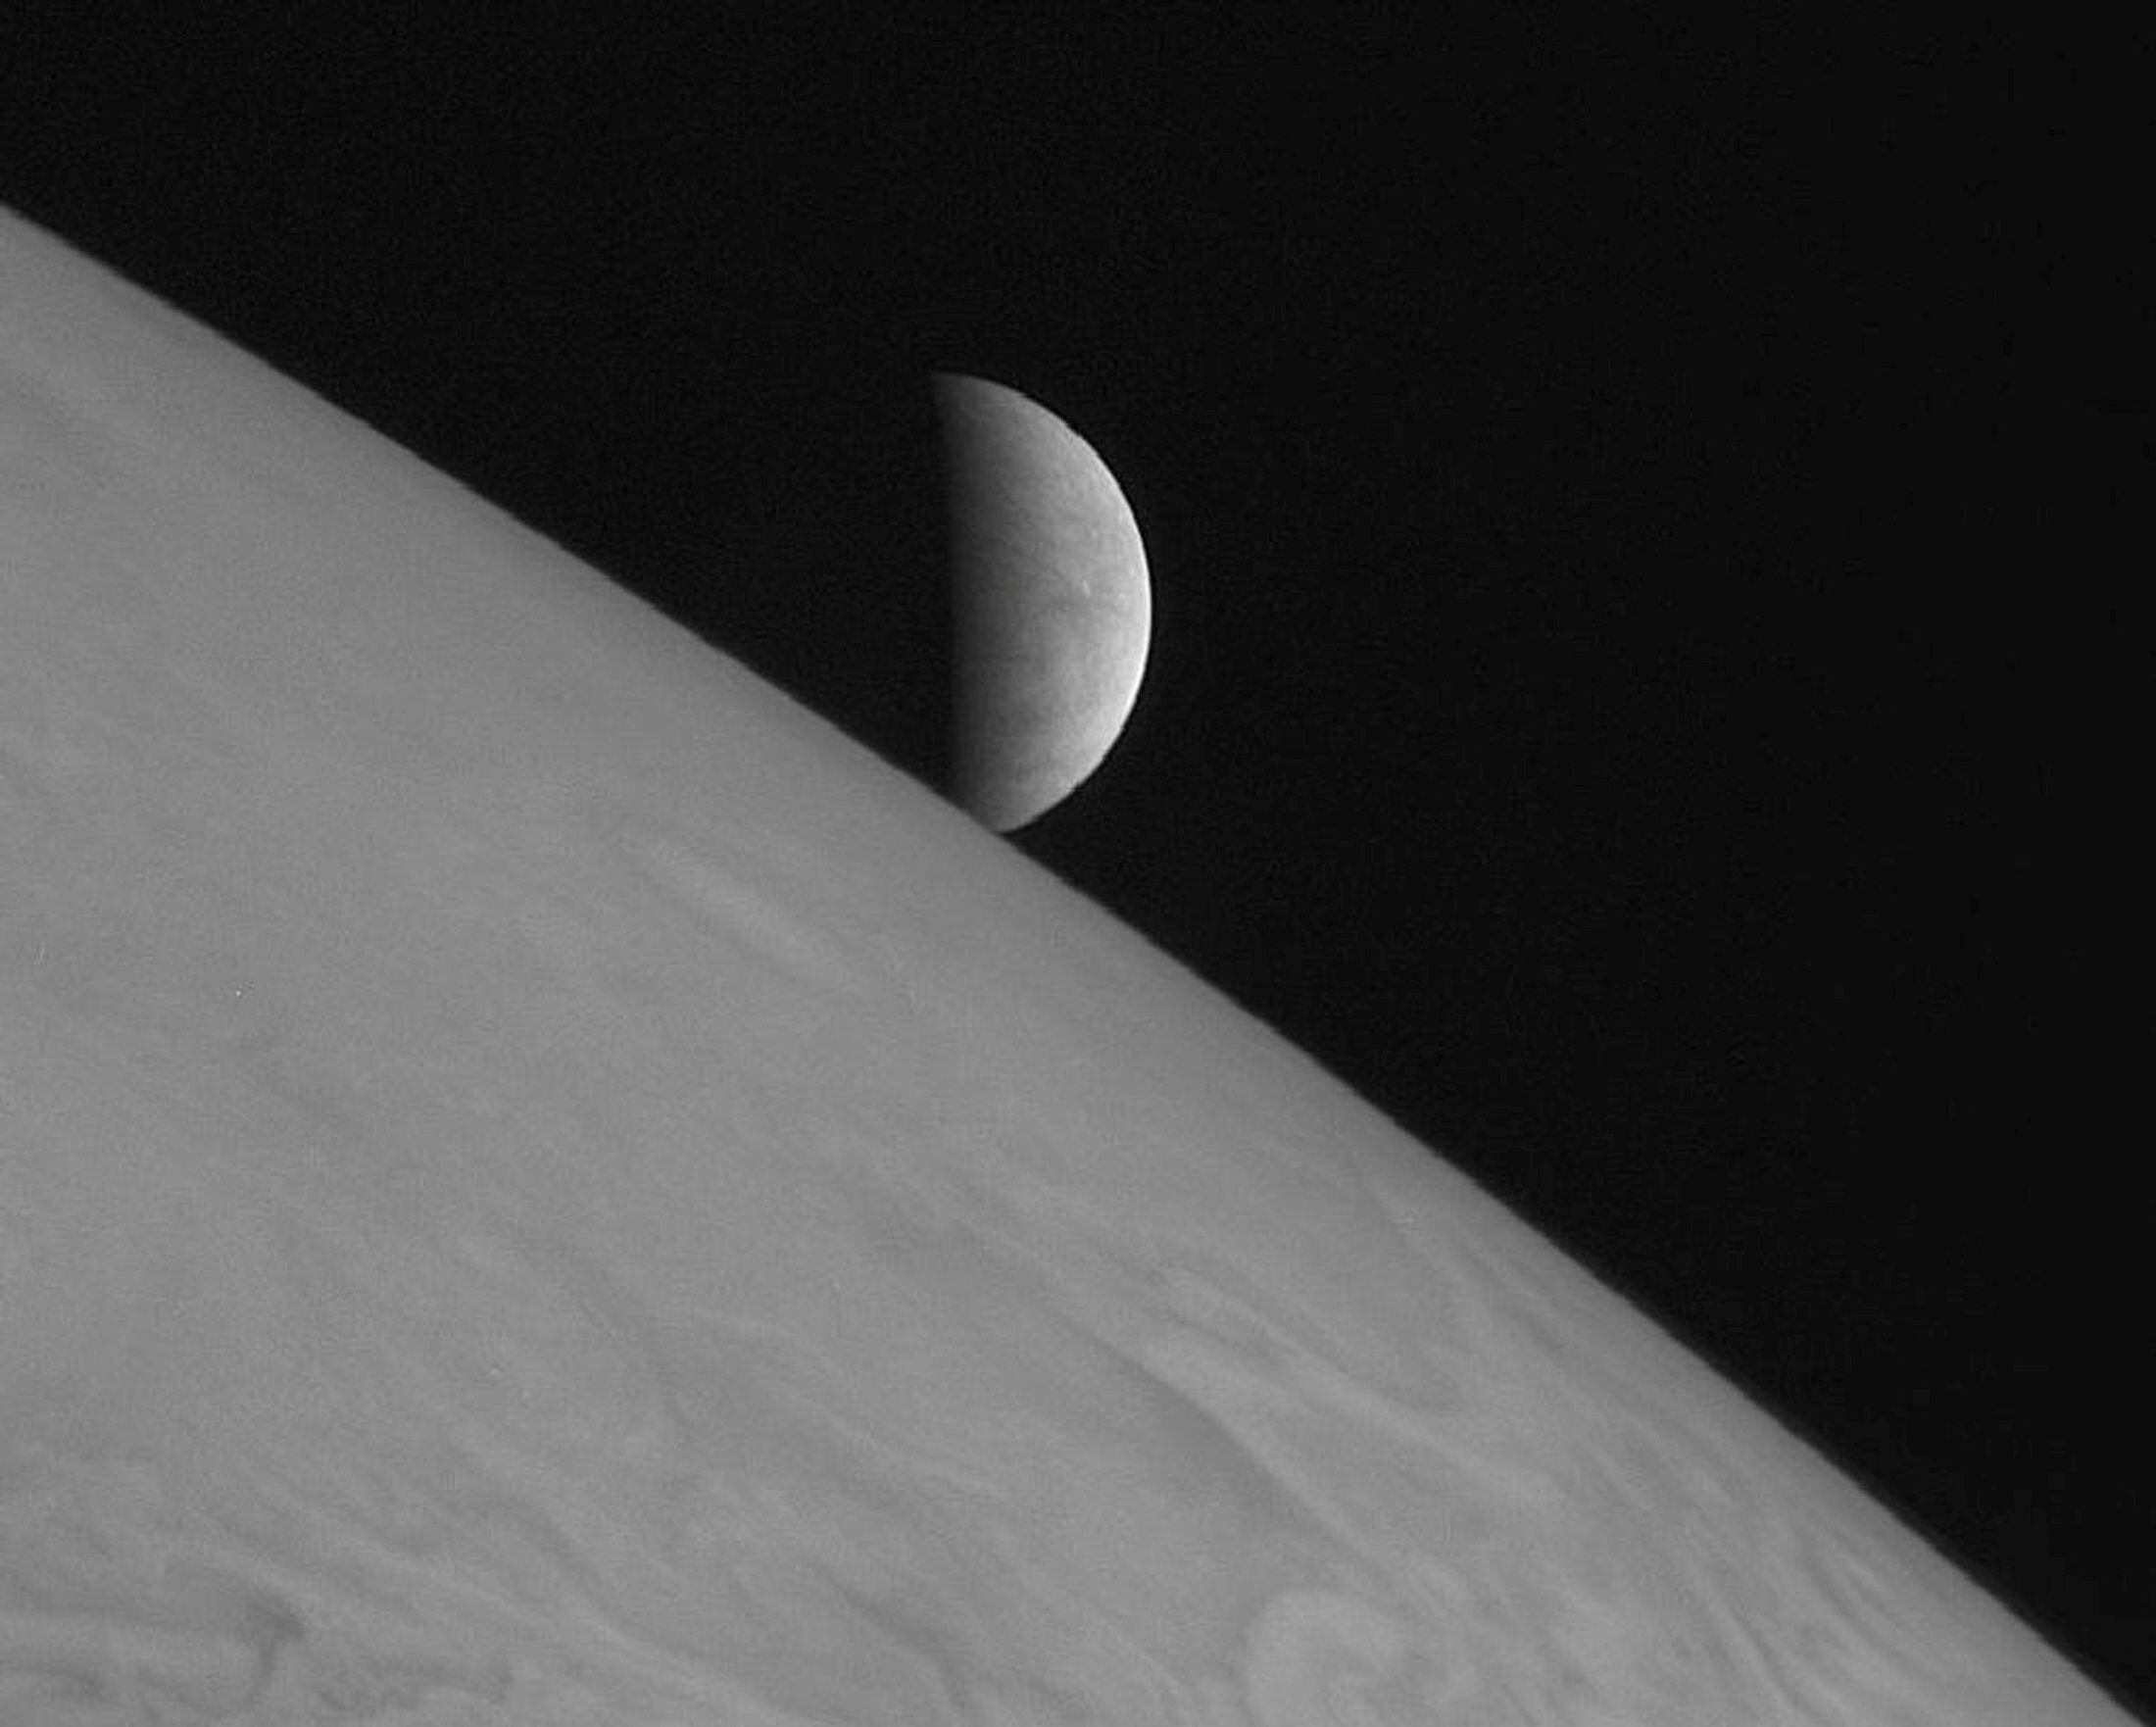 La nave espacial New Horizons de la NASA tomó esta imagen de la luna helada Europa elevándose por encima de las cimas de las nubes de Júpiter tras el máximo acercamiento de la sonda al planeta gigante gaseoso en 2007 (REUTERS)